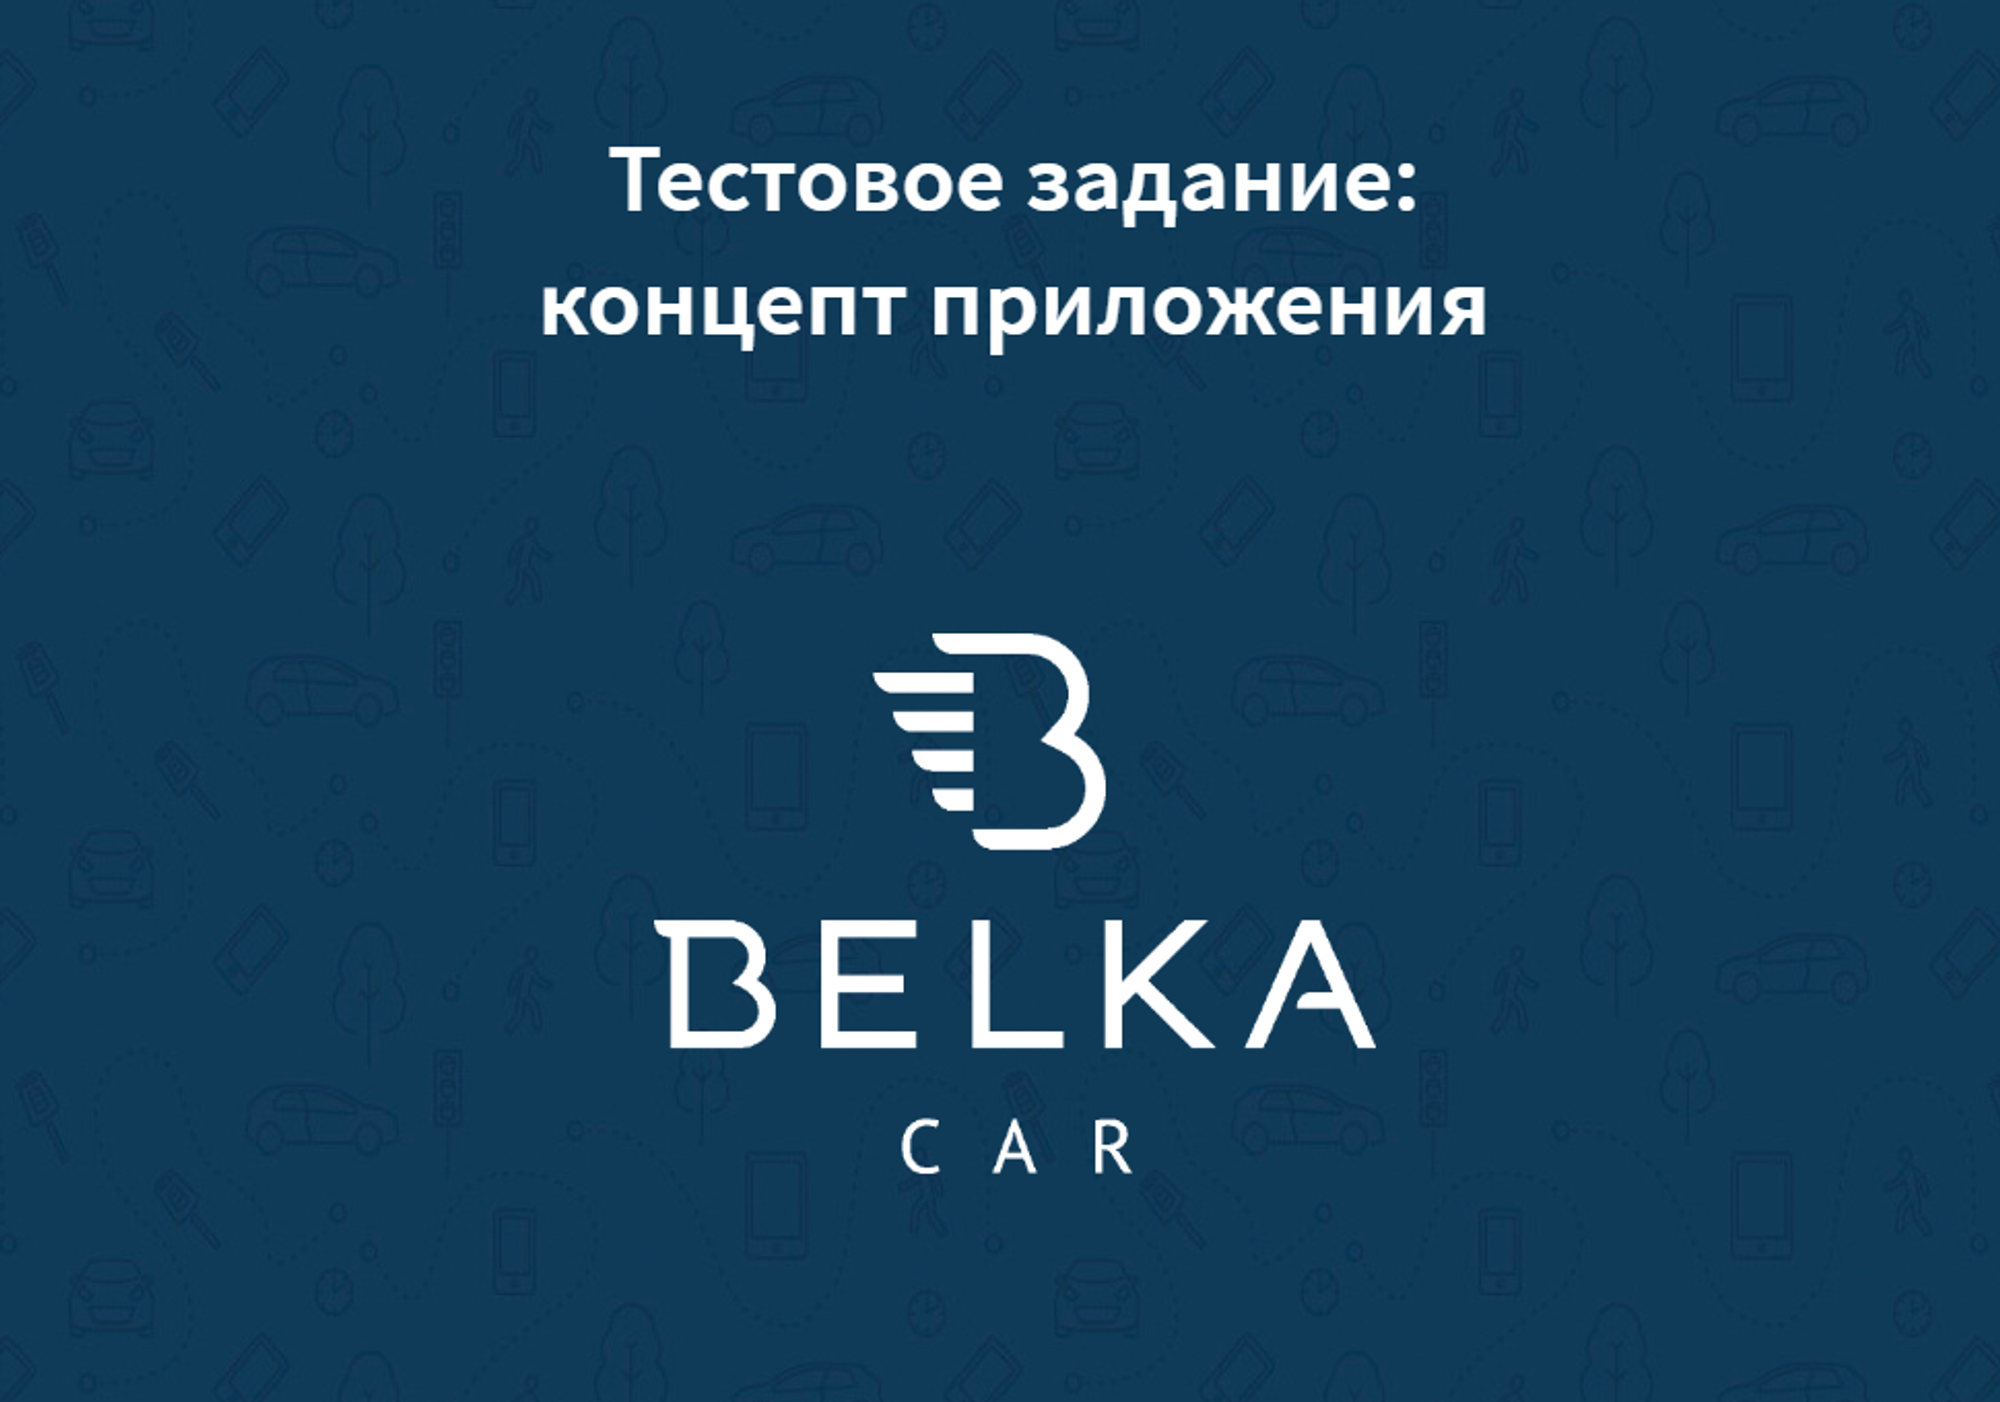 Belkacar — carsharing app concept